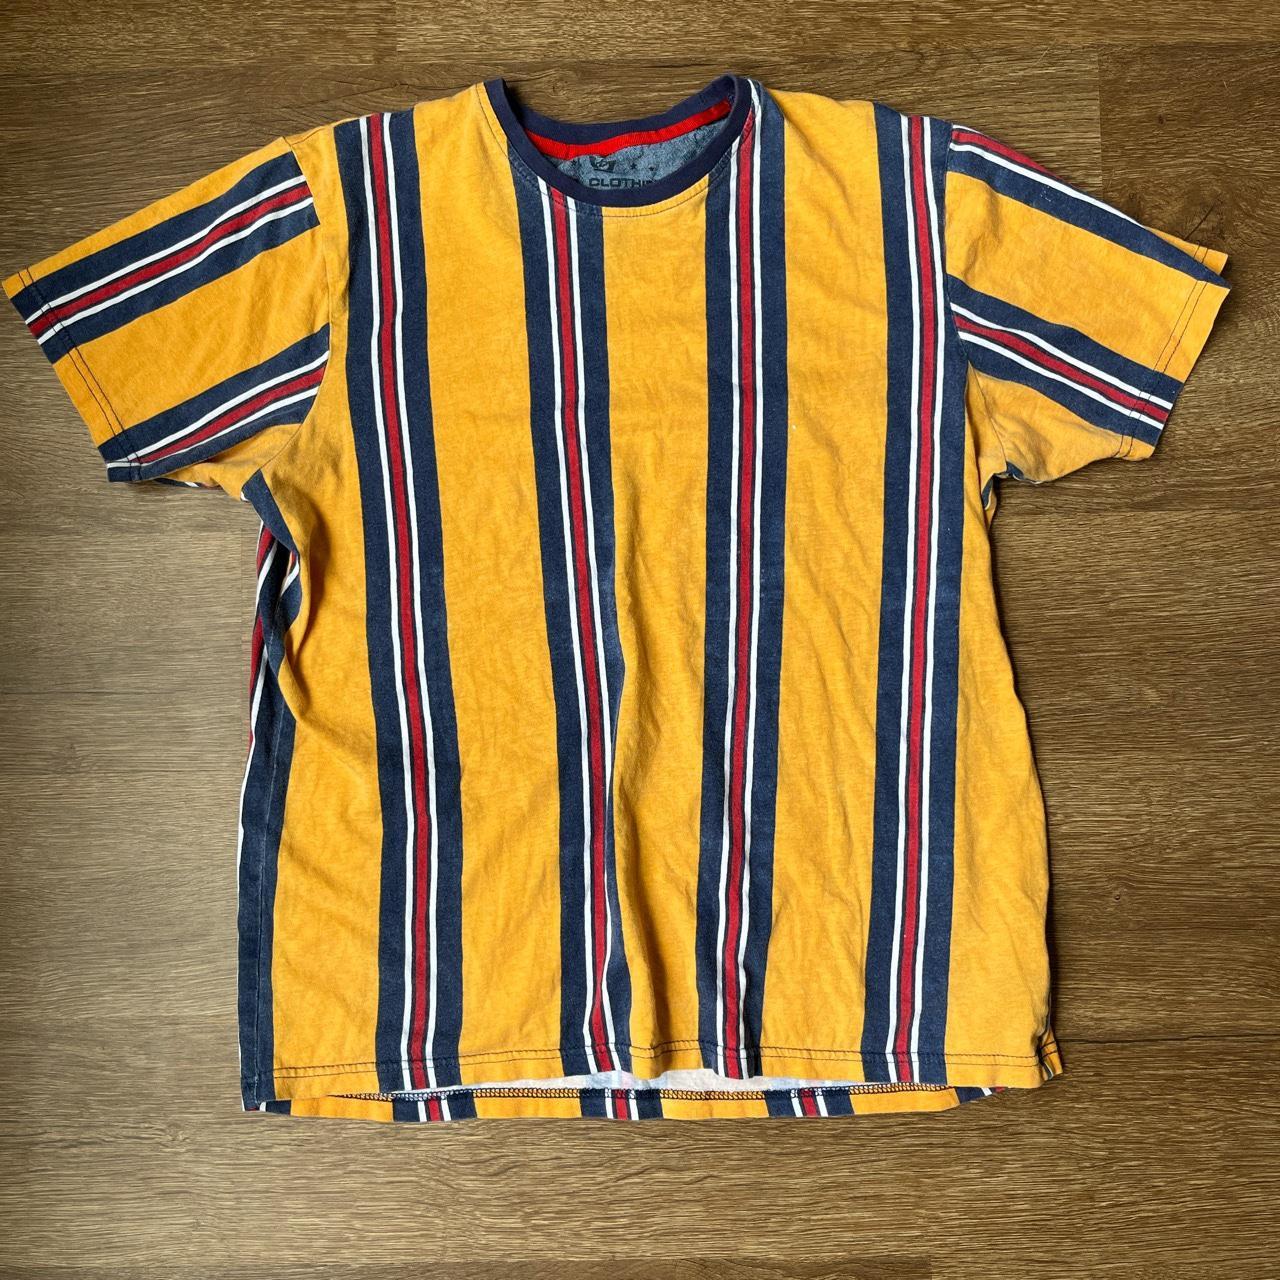 Men’s Striped T-shirt Excellent Condition! Size:... - Depop